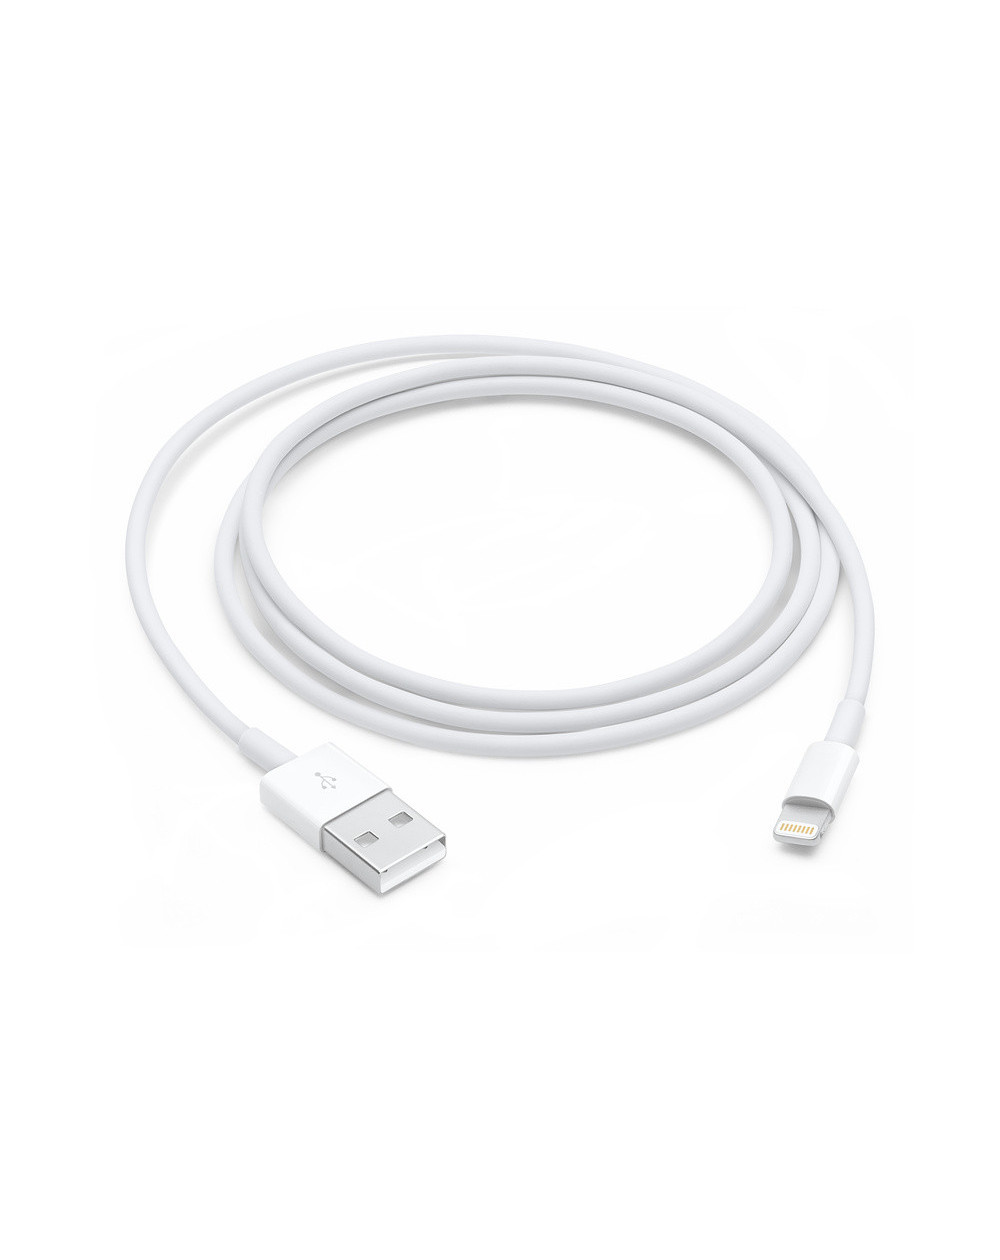 Cavo Lightning Apple USB (1M) - C&C Shop